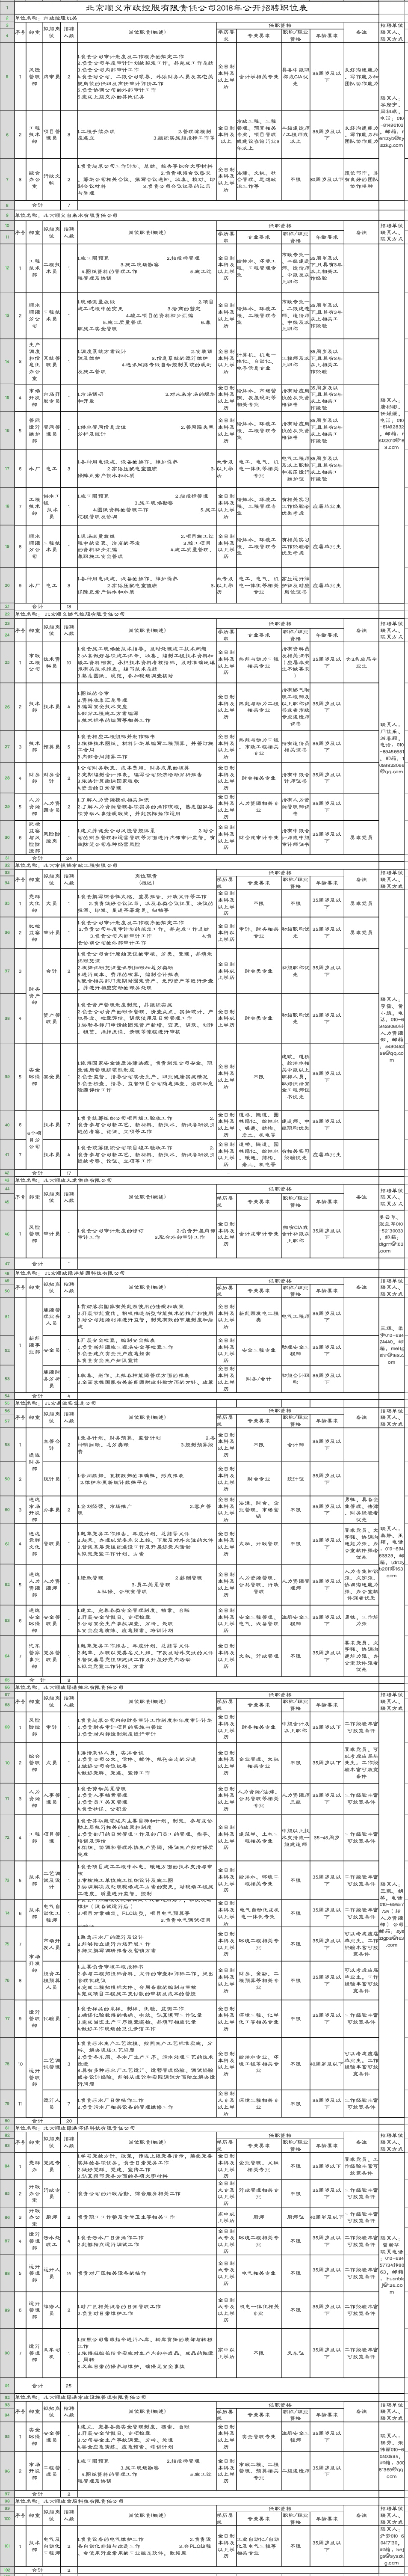 详见《北京顺义市政控股有限责任公司2018年公开招聘职位表》.